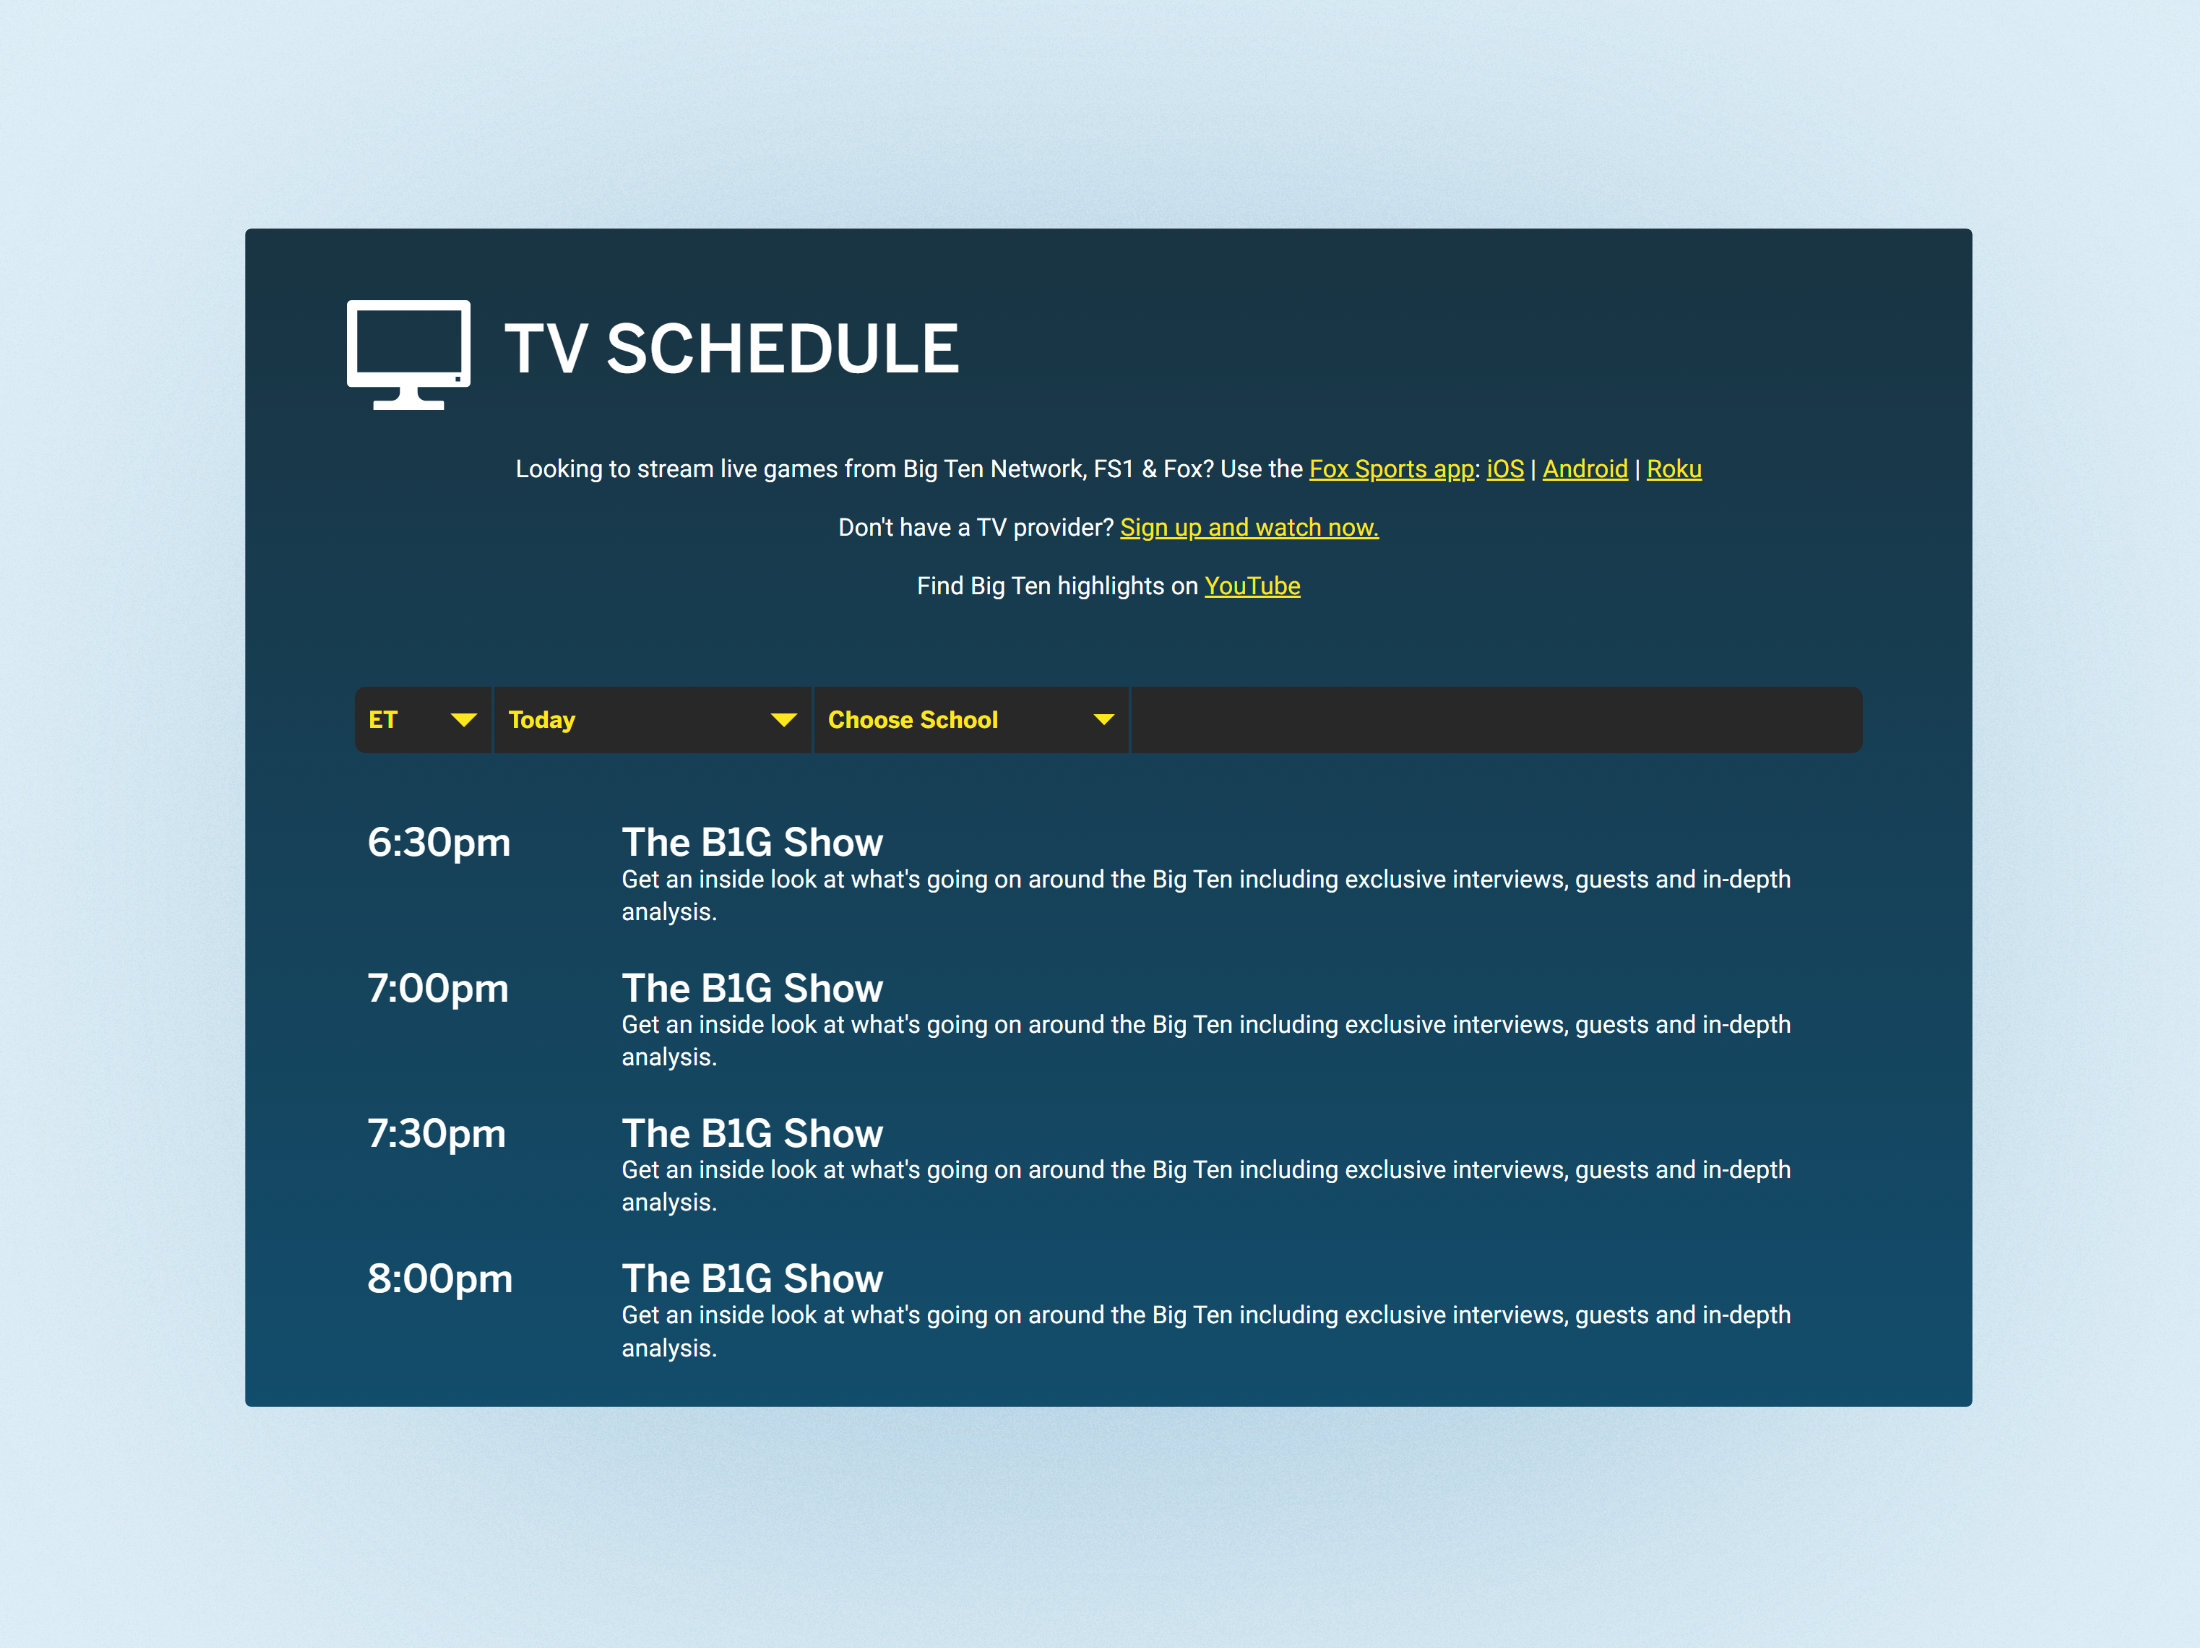 BTN case study - tv schedule